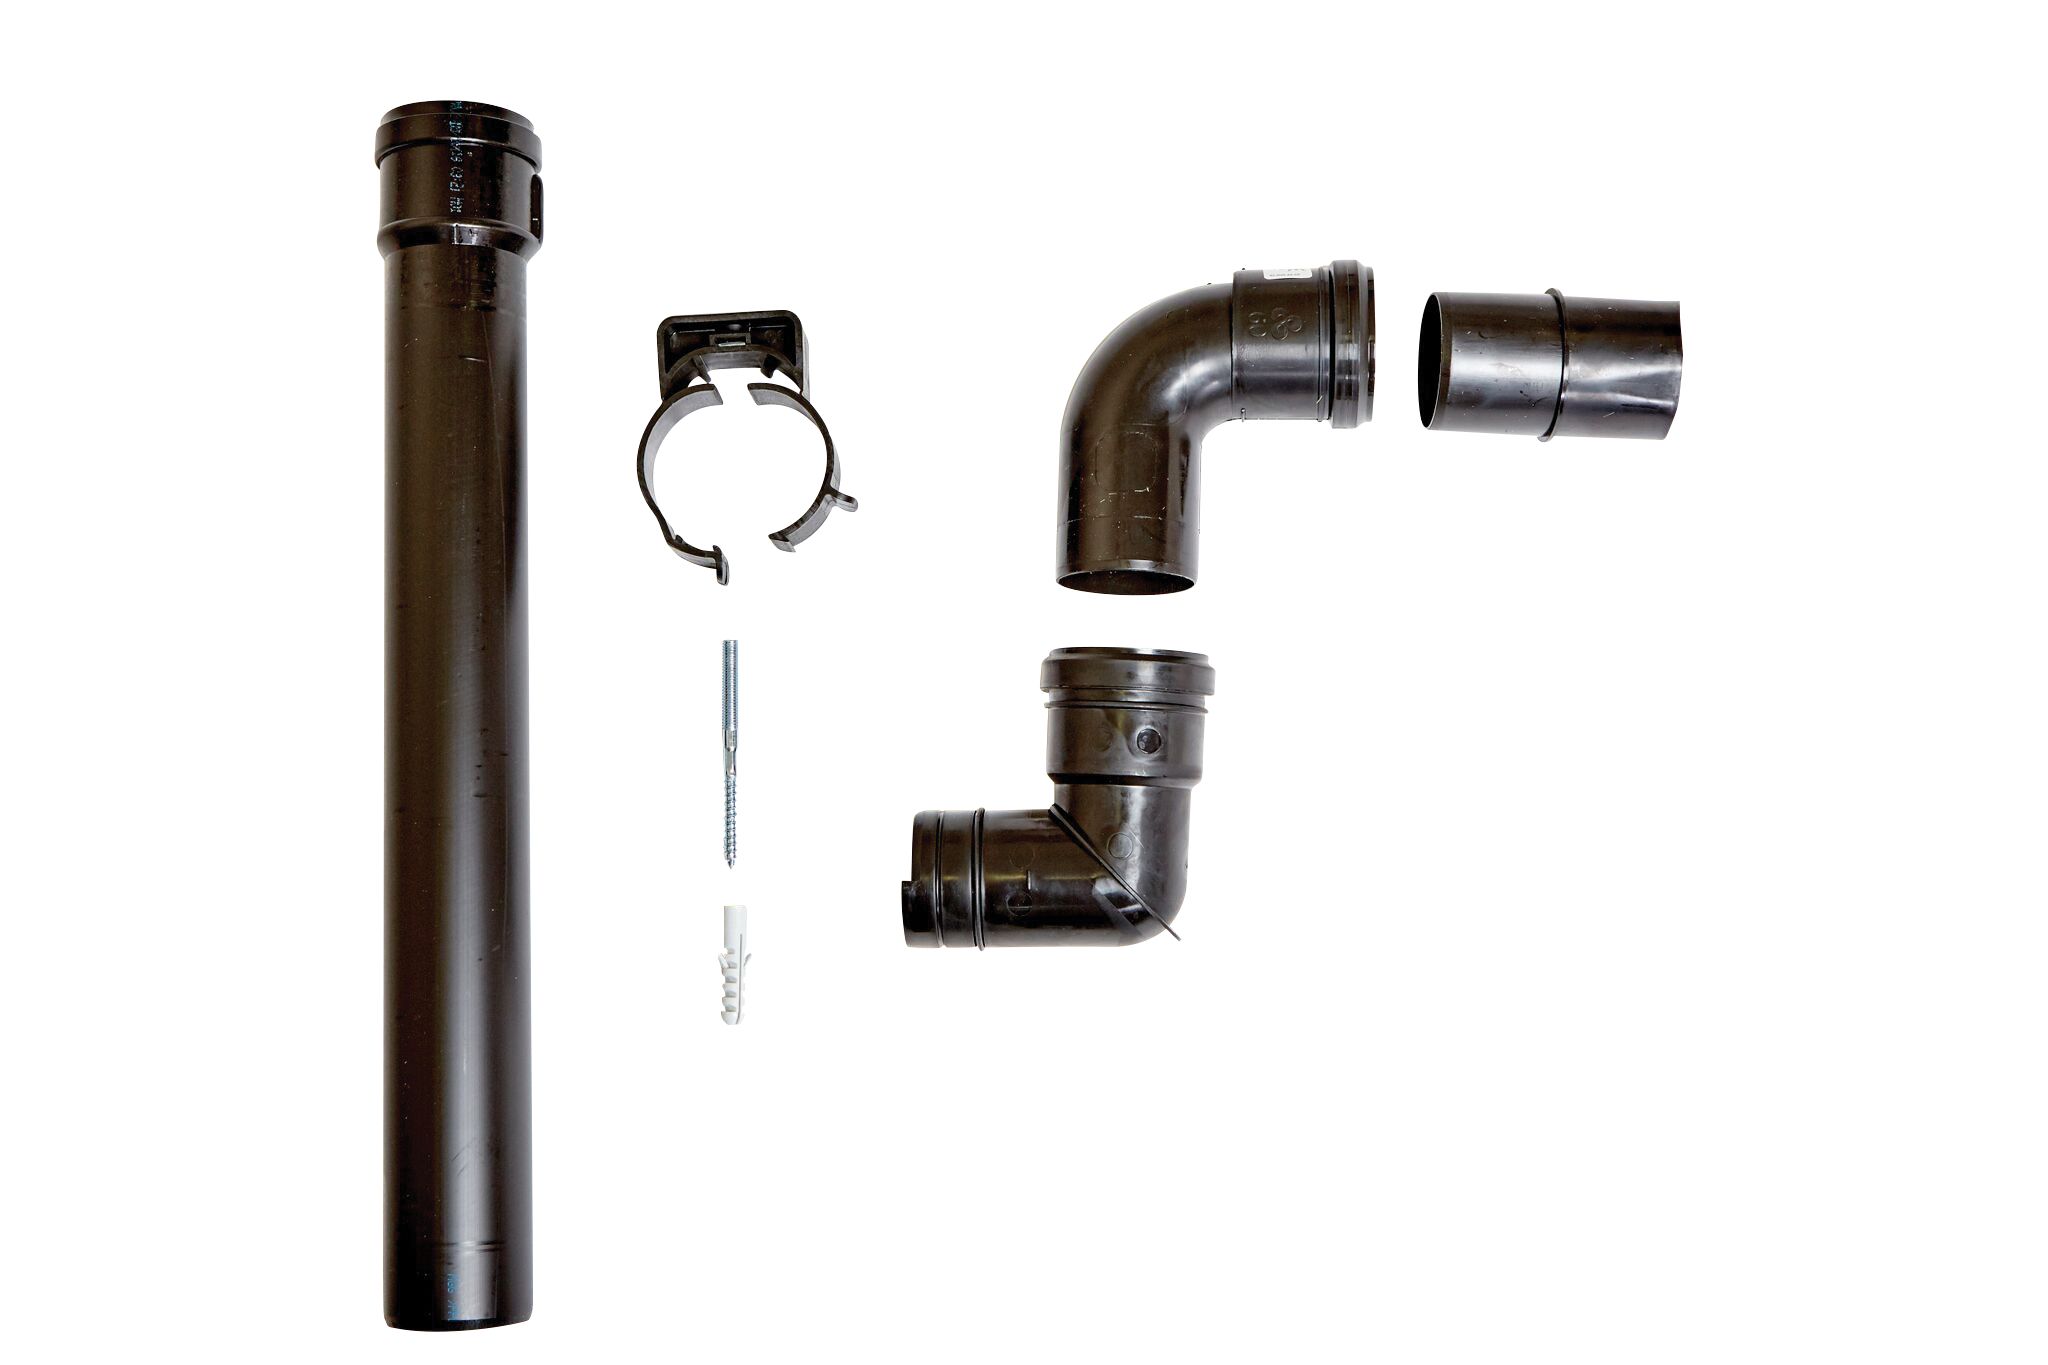 Ideal Independent Combi/System Boiler High Level Flue Outlet Plume Kit - 60mm